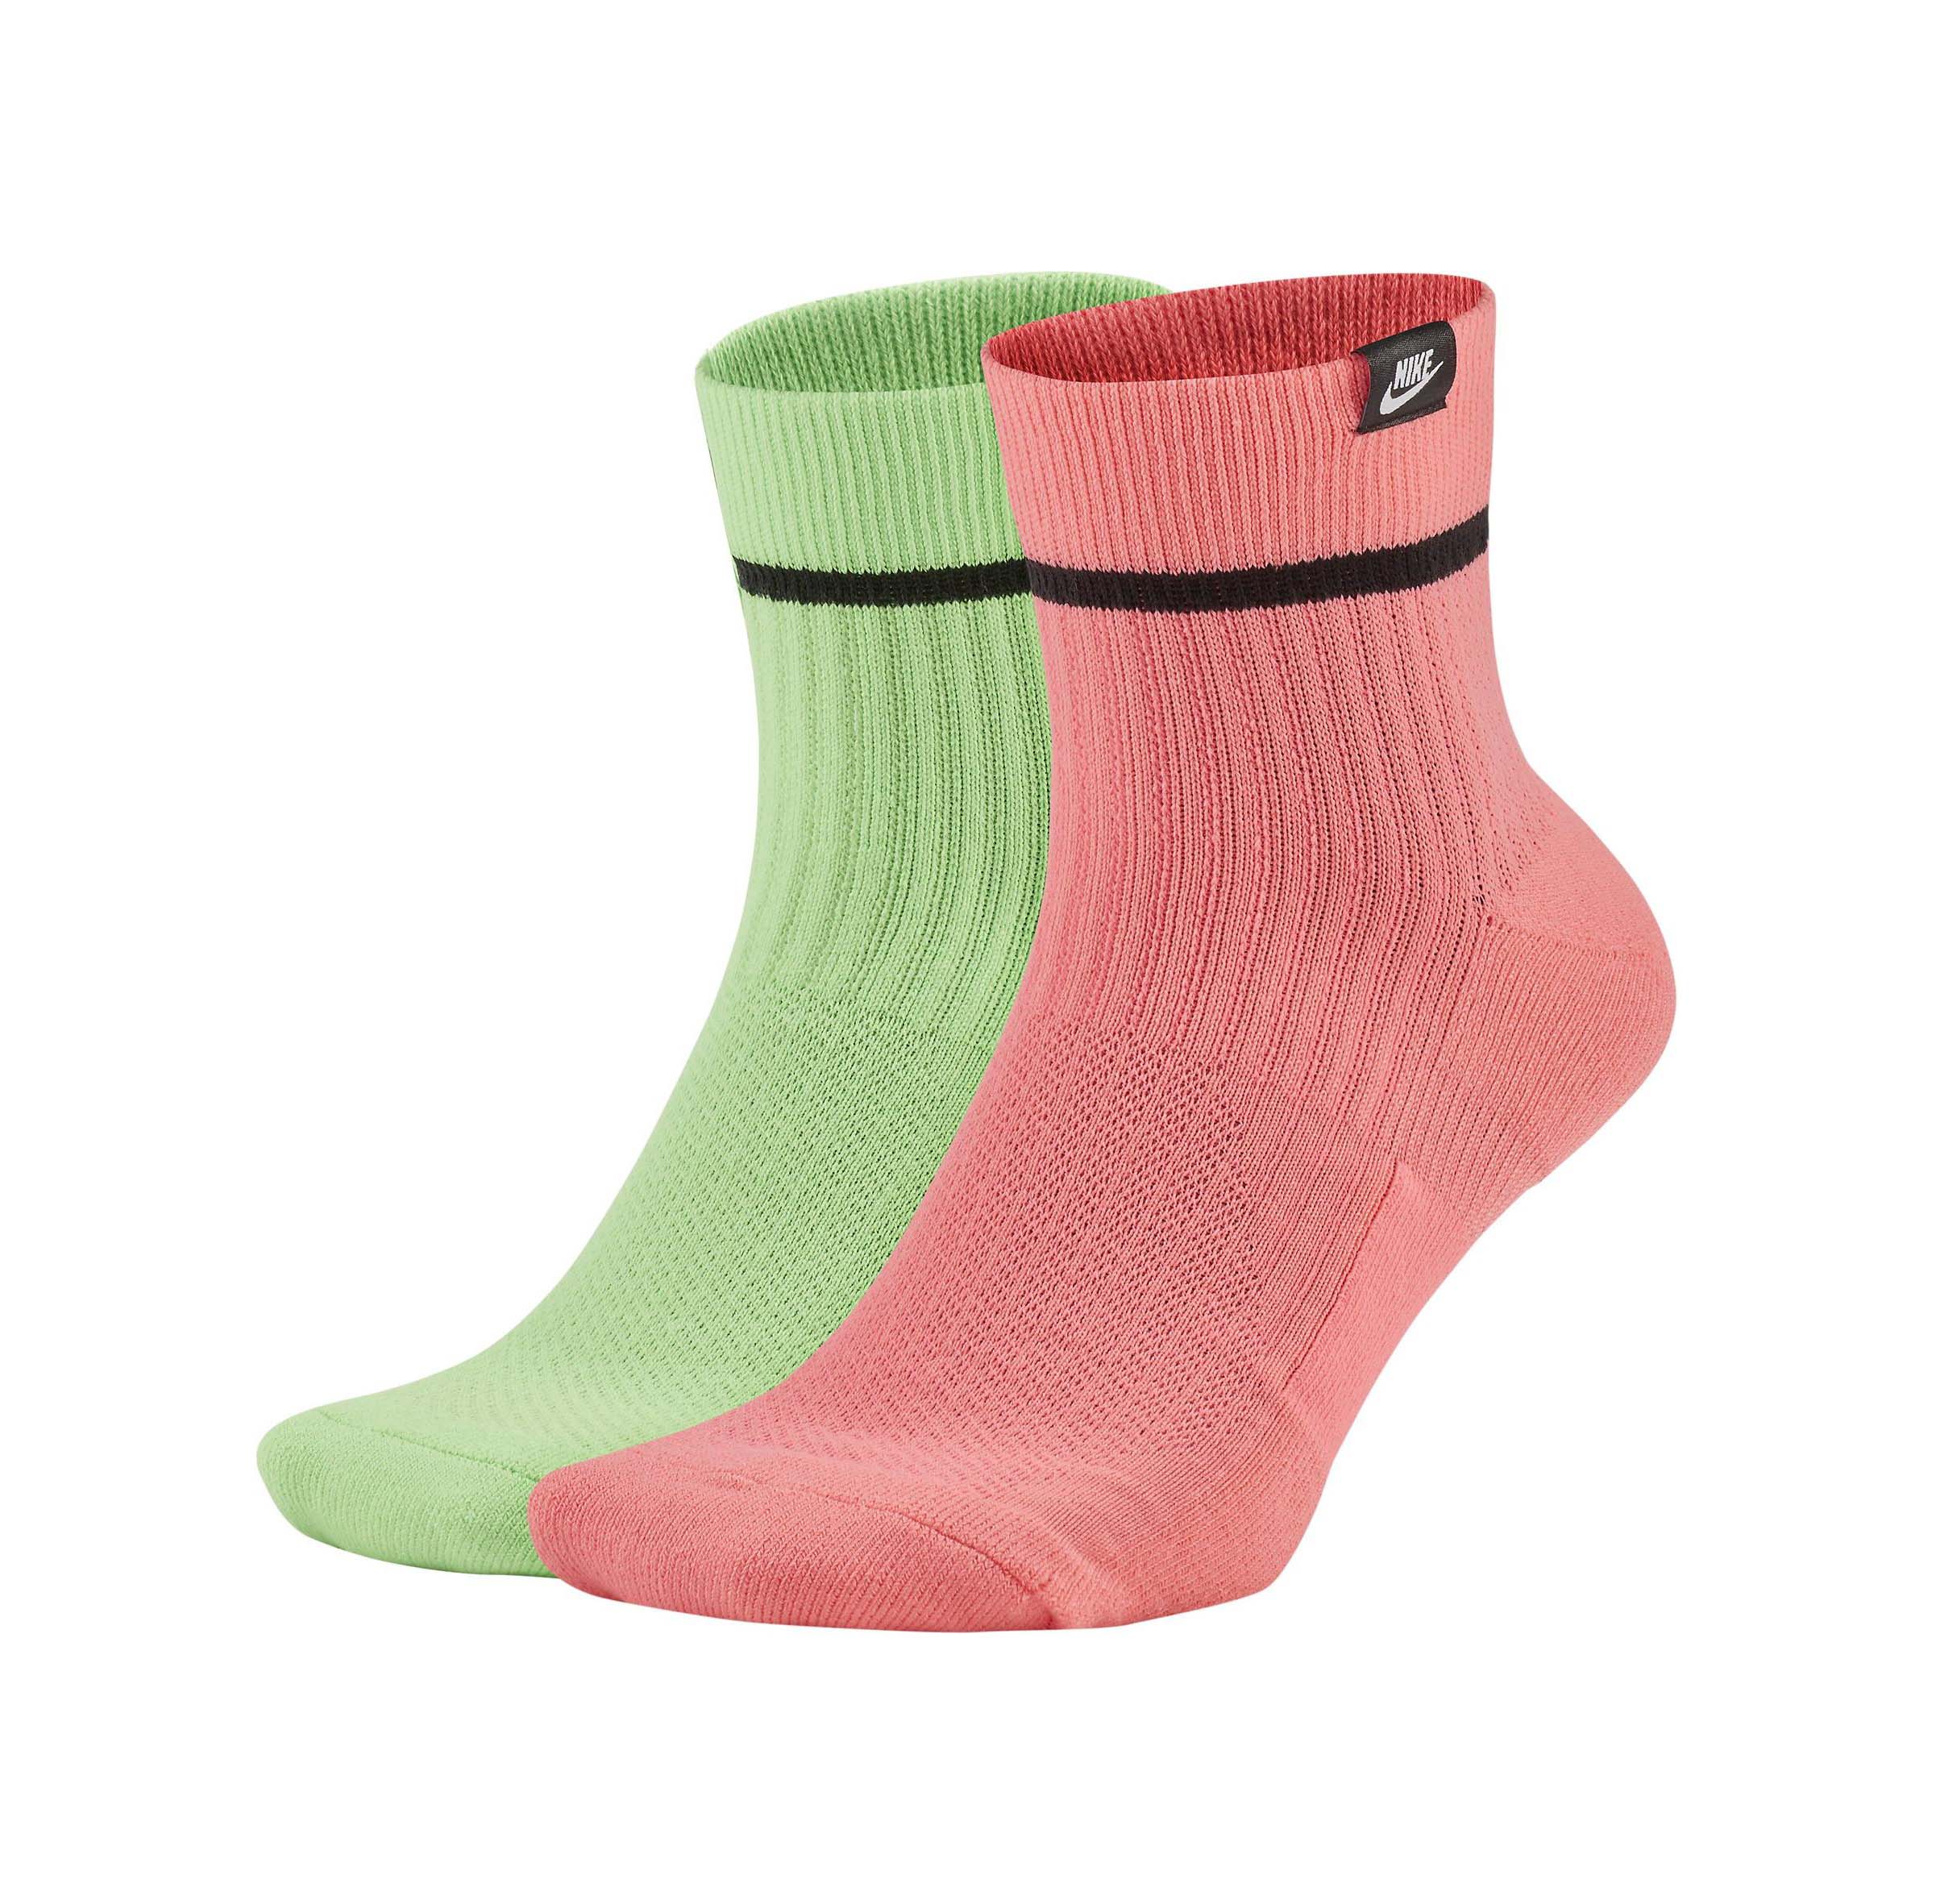 Nike Men's SNKR SOX Two Pair Ankle Socks | eBay